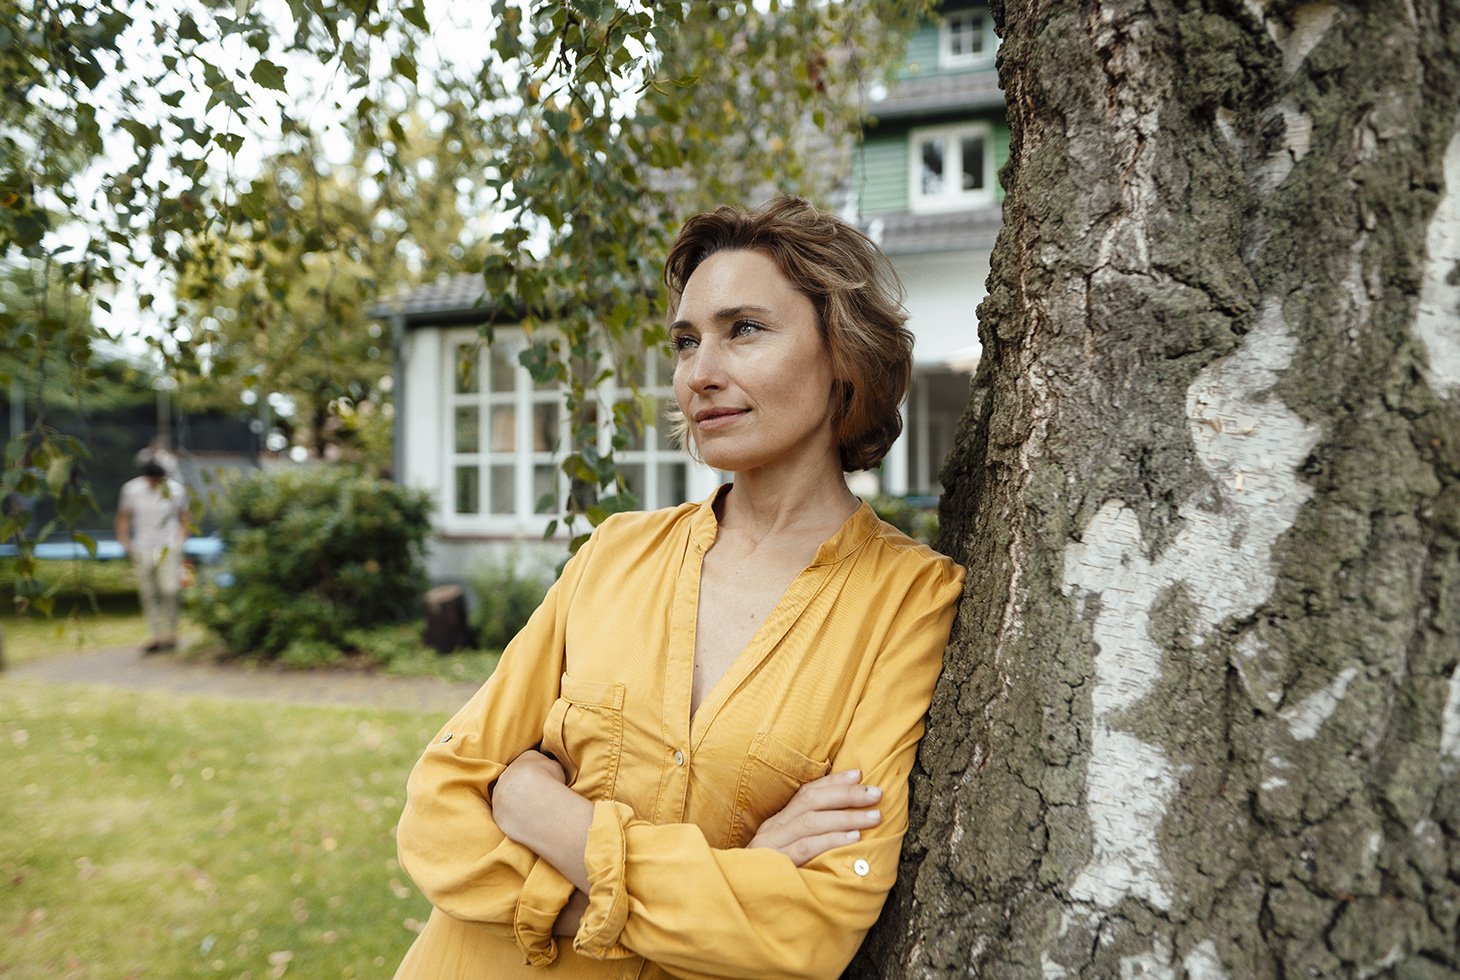 Portrait d’une femme les bras croisés, adossée à un tronc arbre devant une maison. Image pour illustrer la thématique incontinence mixte.